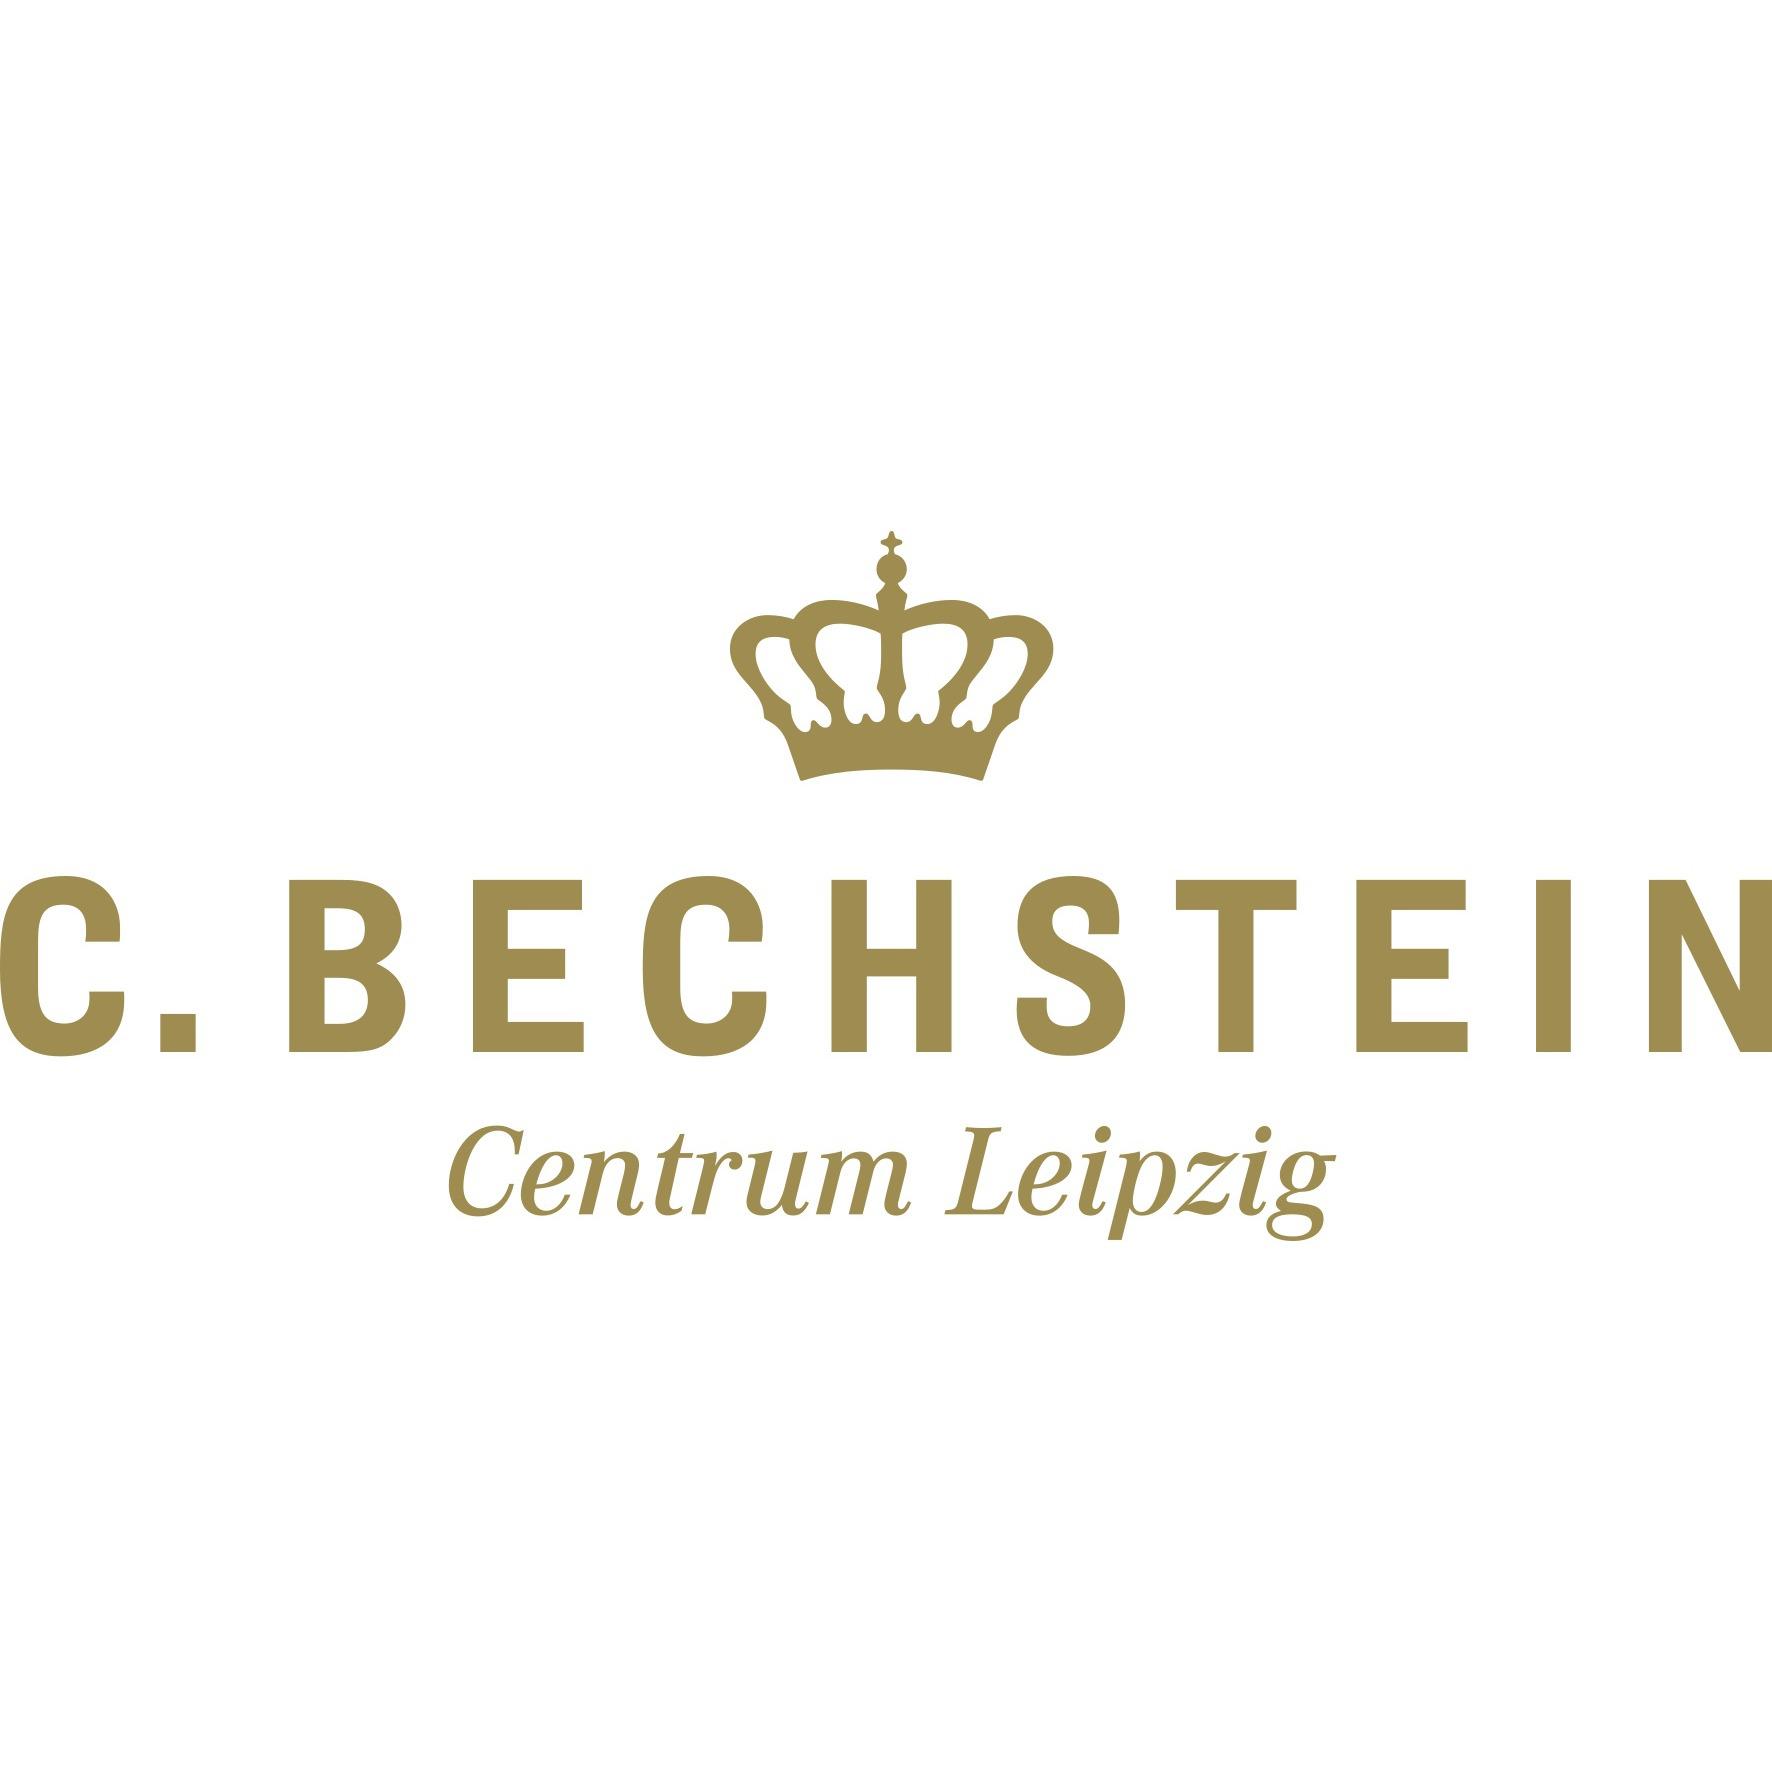 Logo C. Bechstein Centrum Leipzig